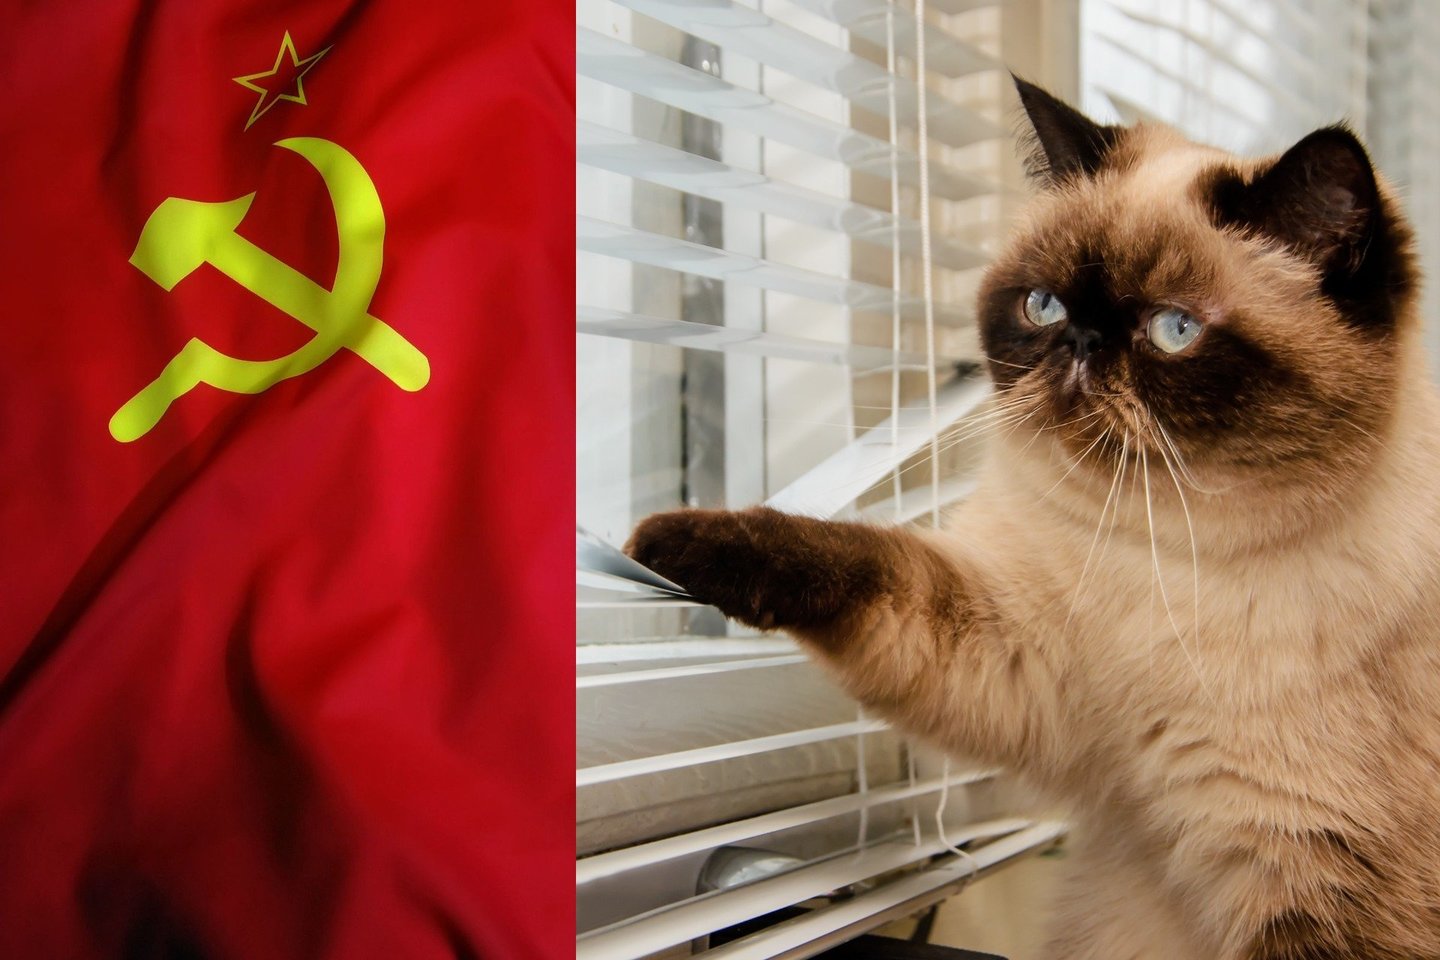  XX amžiaus septintajame dešimtmetyje JAV Centrinė žvalgybos agentūra (CŽA) skyrė milijoną dolerių ir kelerius metus metų katės-kyborgo kūrimui, kurios tikslas buvo šnipinėti sovietus.<br> 123rf nuotr., lrytas.lt mont.